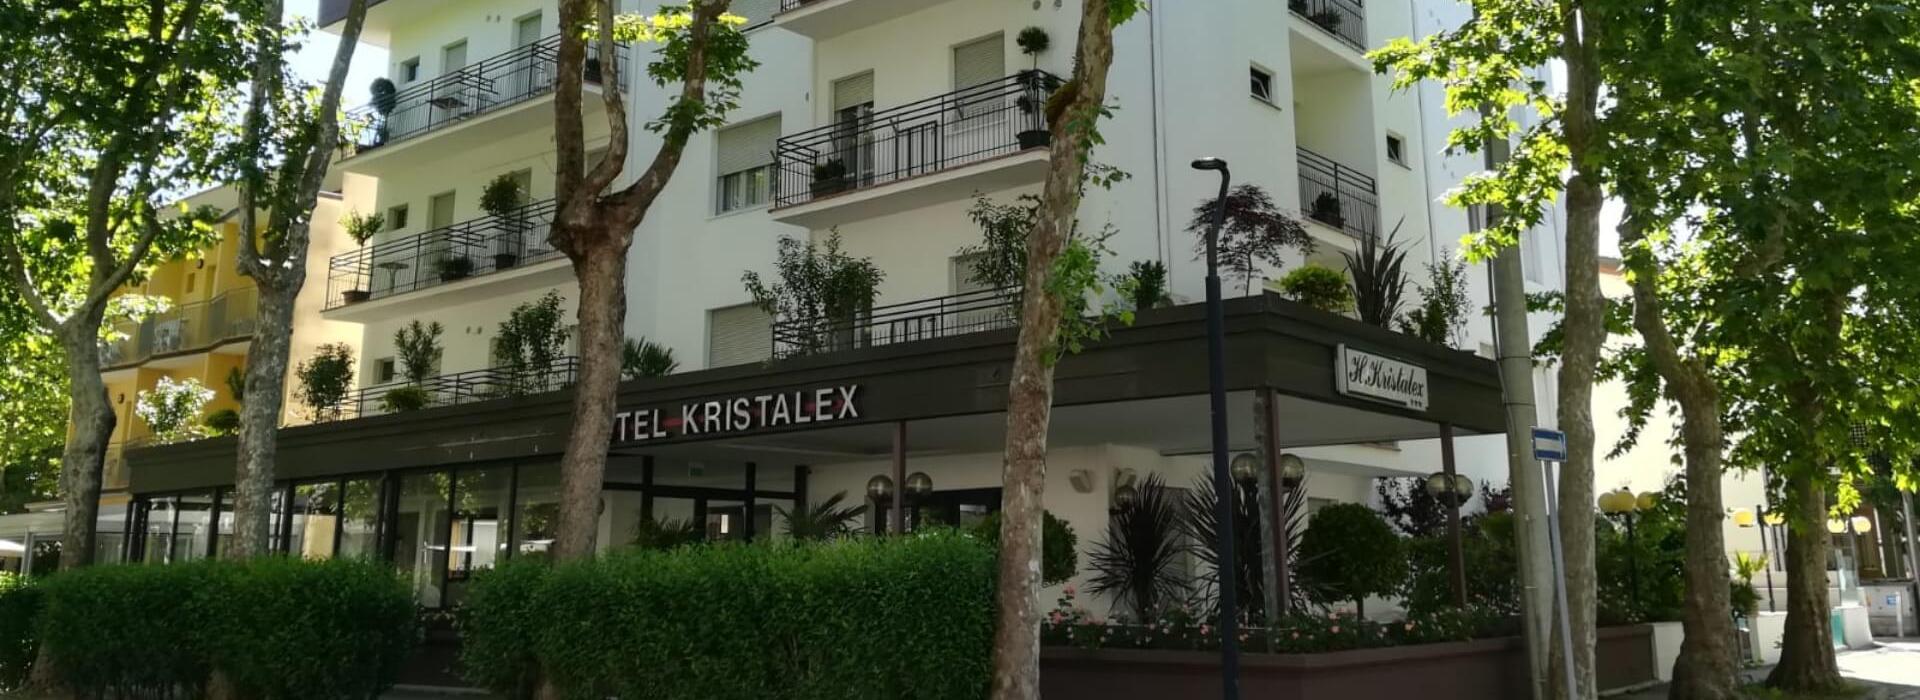 hotelkristalex fr sejour-a-l-hotel-pet-friendly-a-cesenatico-pour-exposition-canine-internationale 017